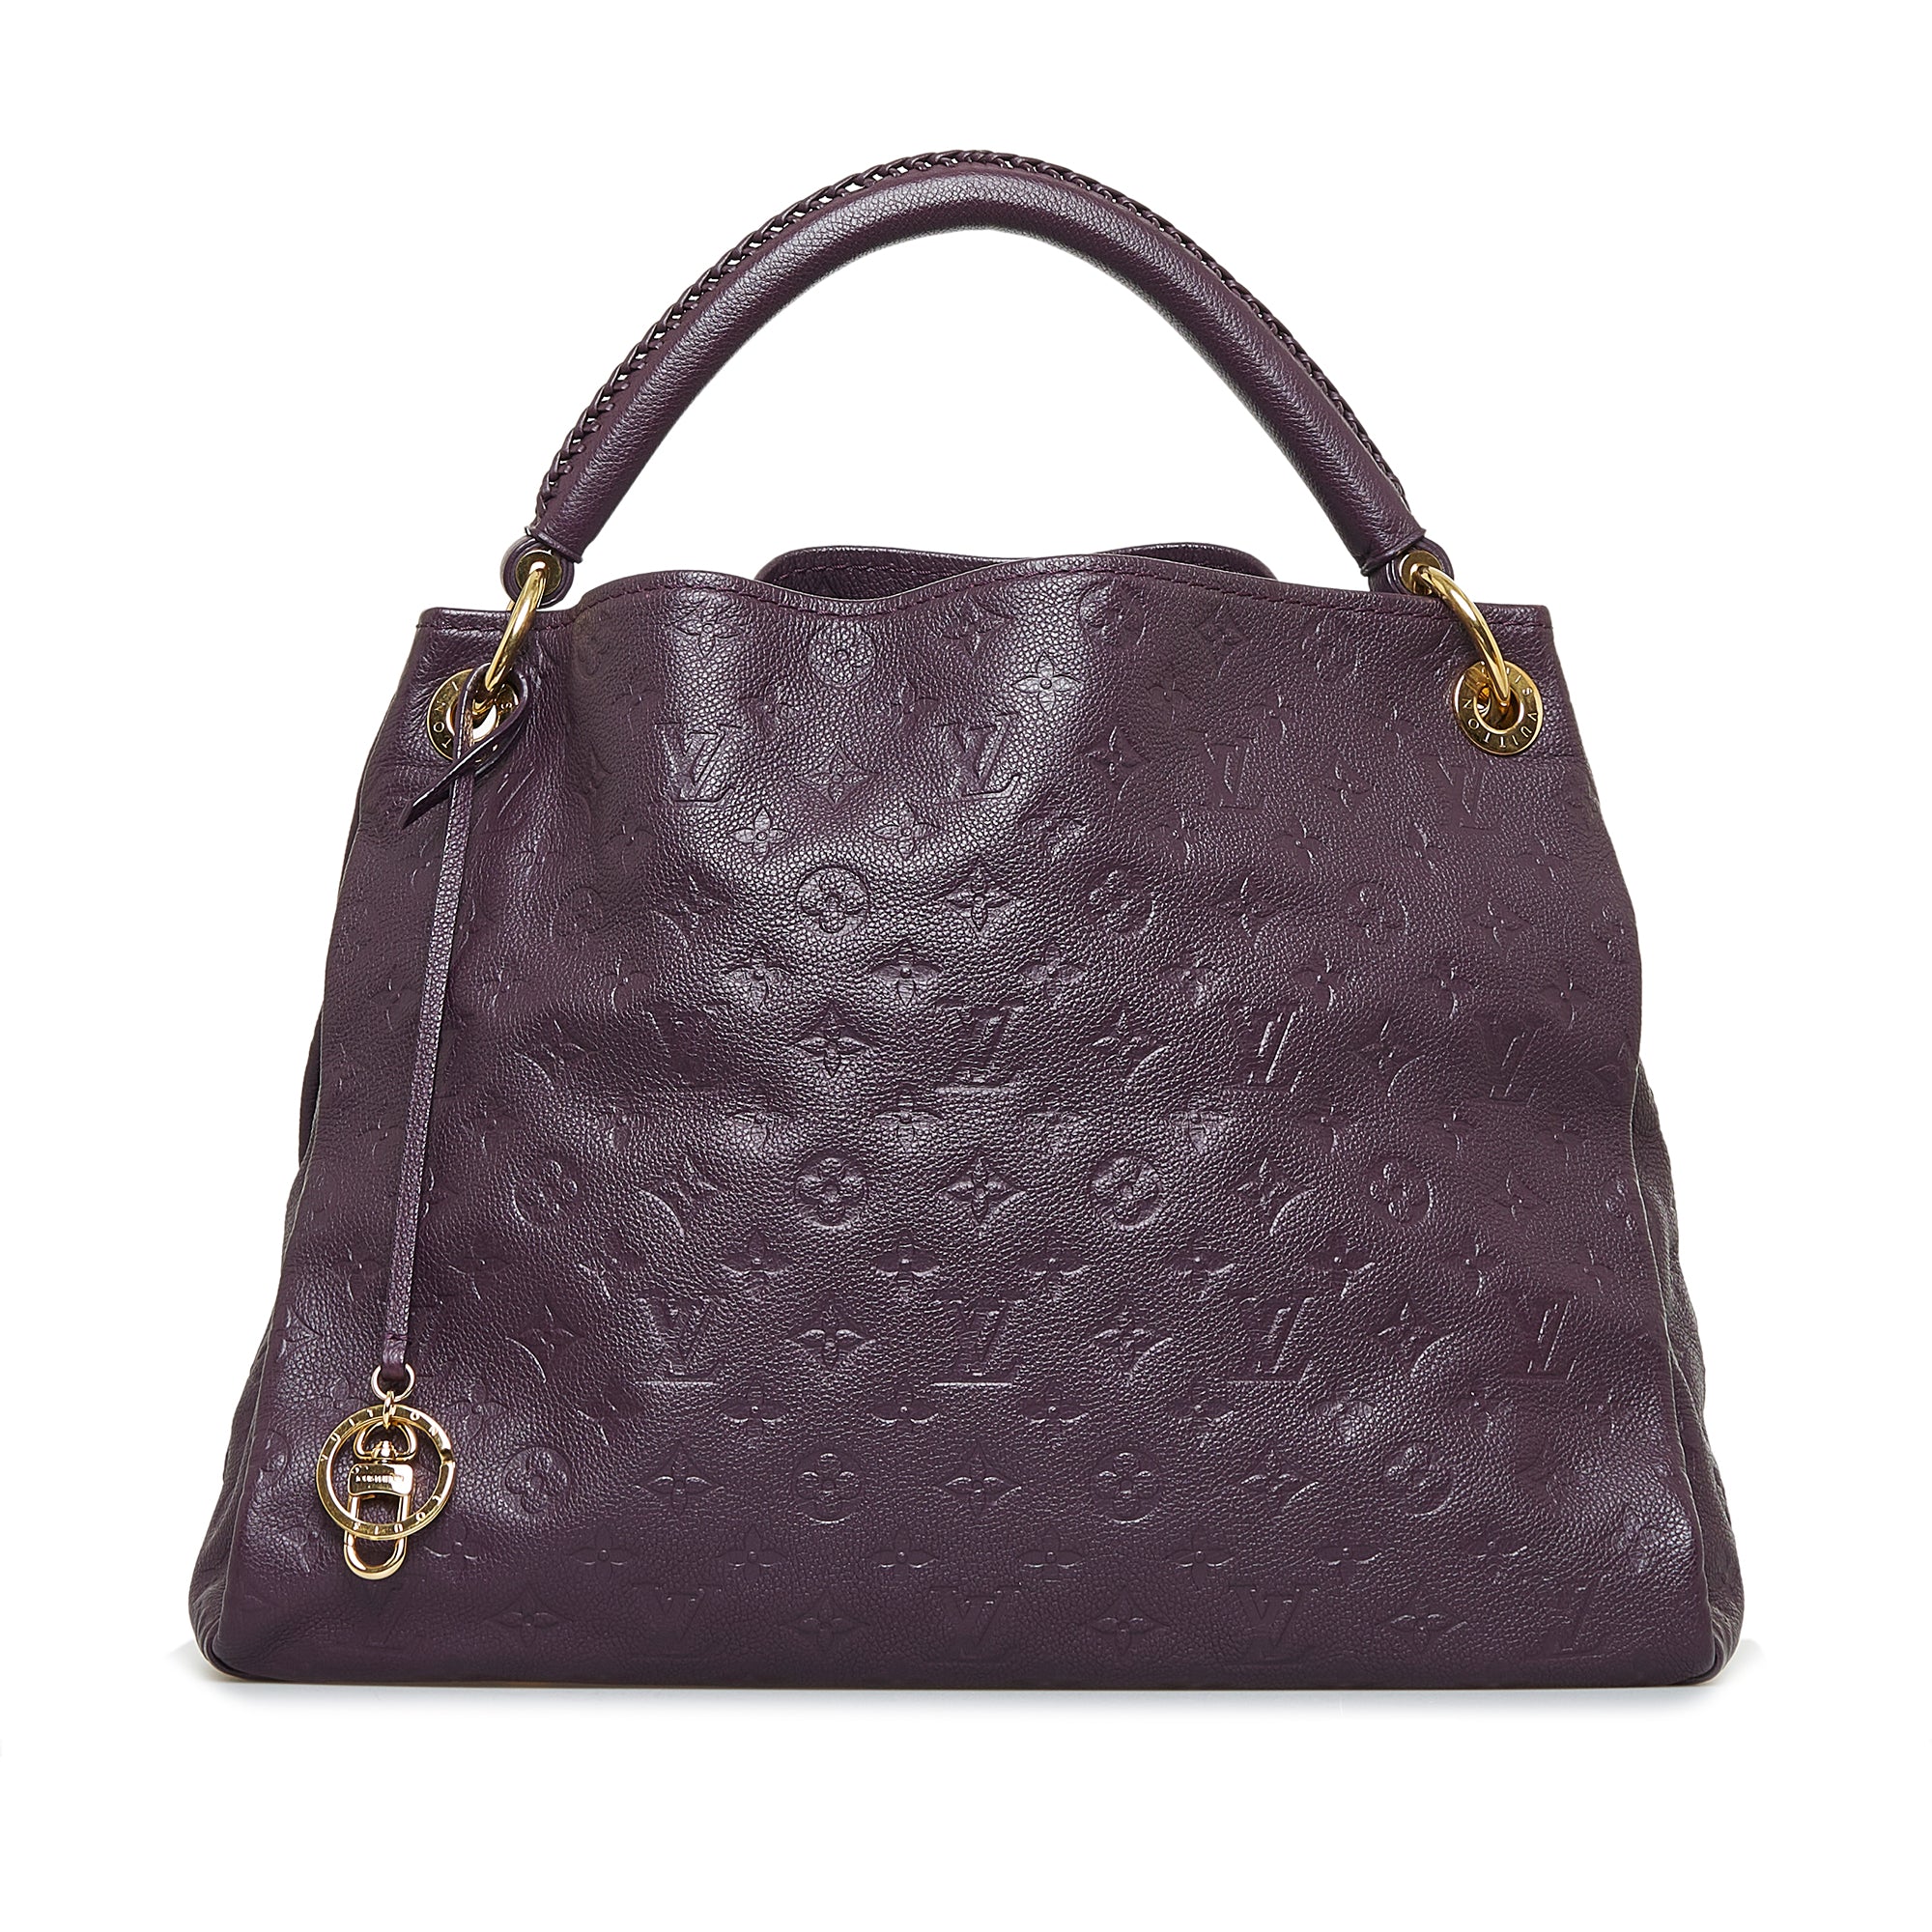 Louis Vuitton Artsy shopping bag in dark brown empreinte monogram leather